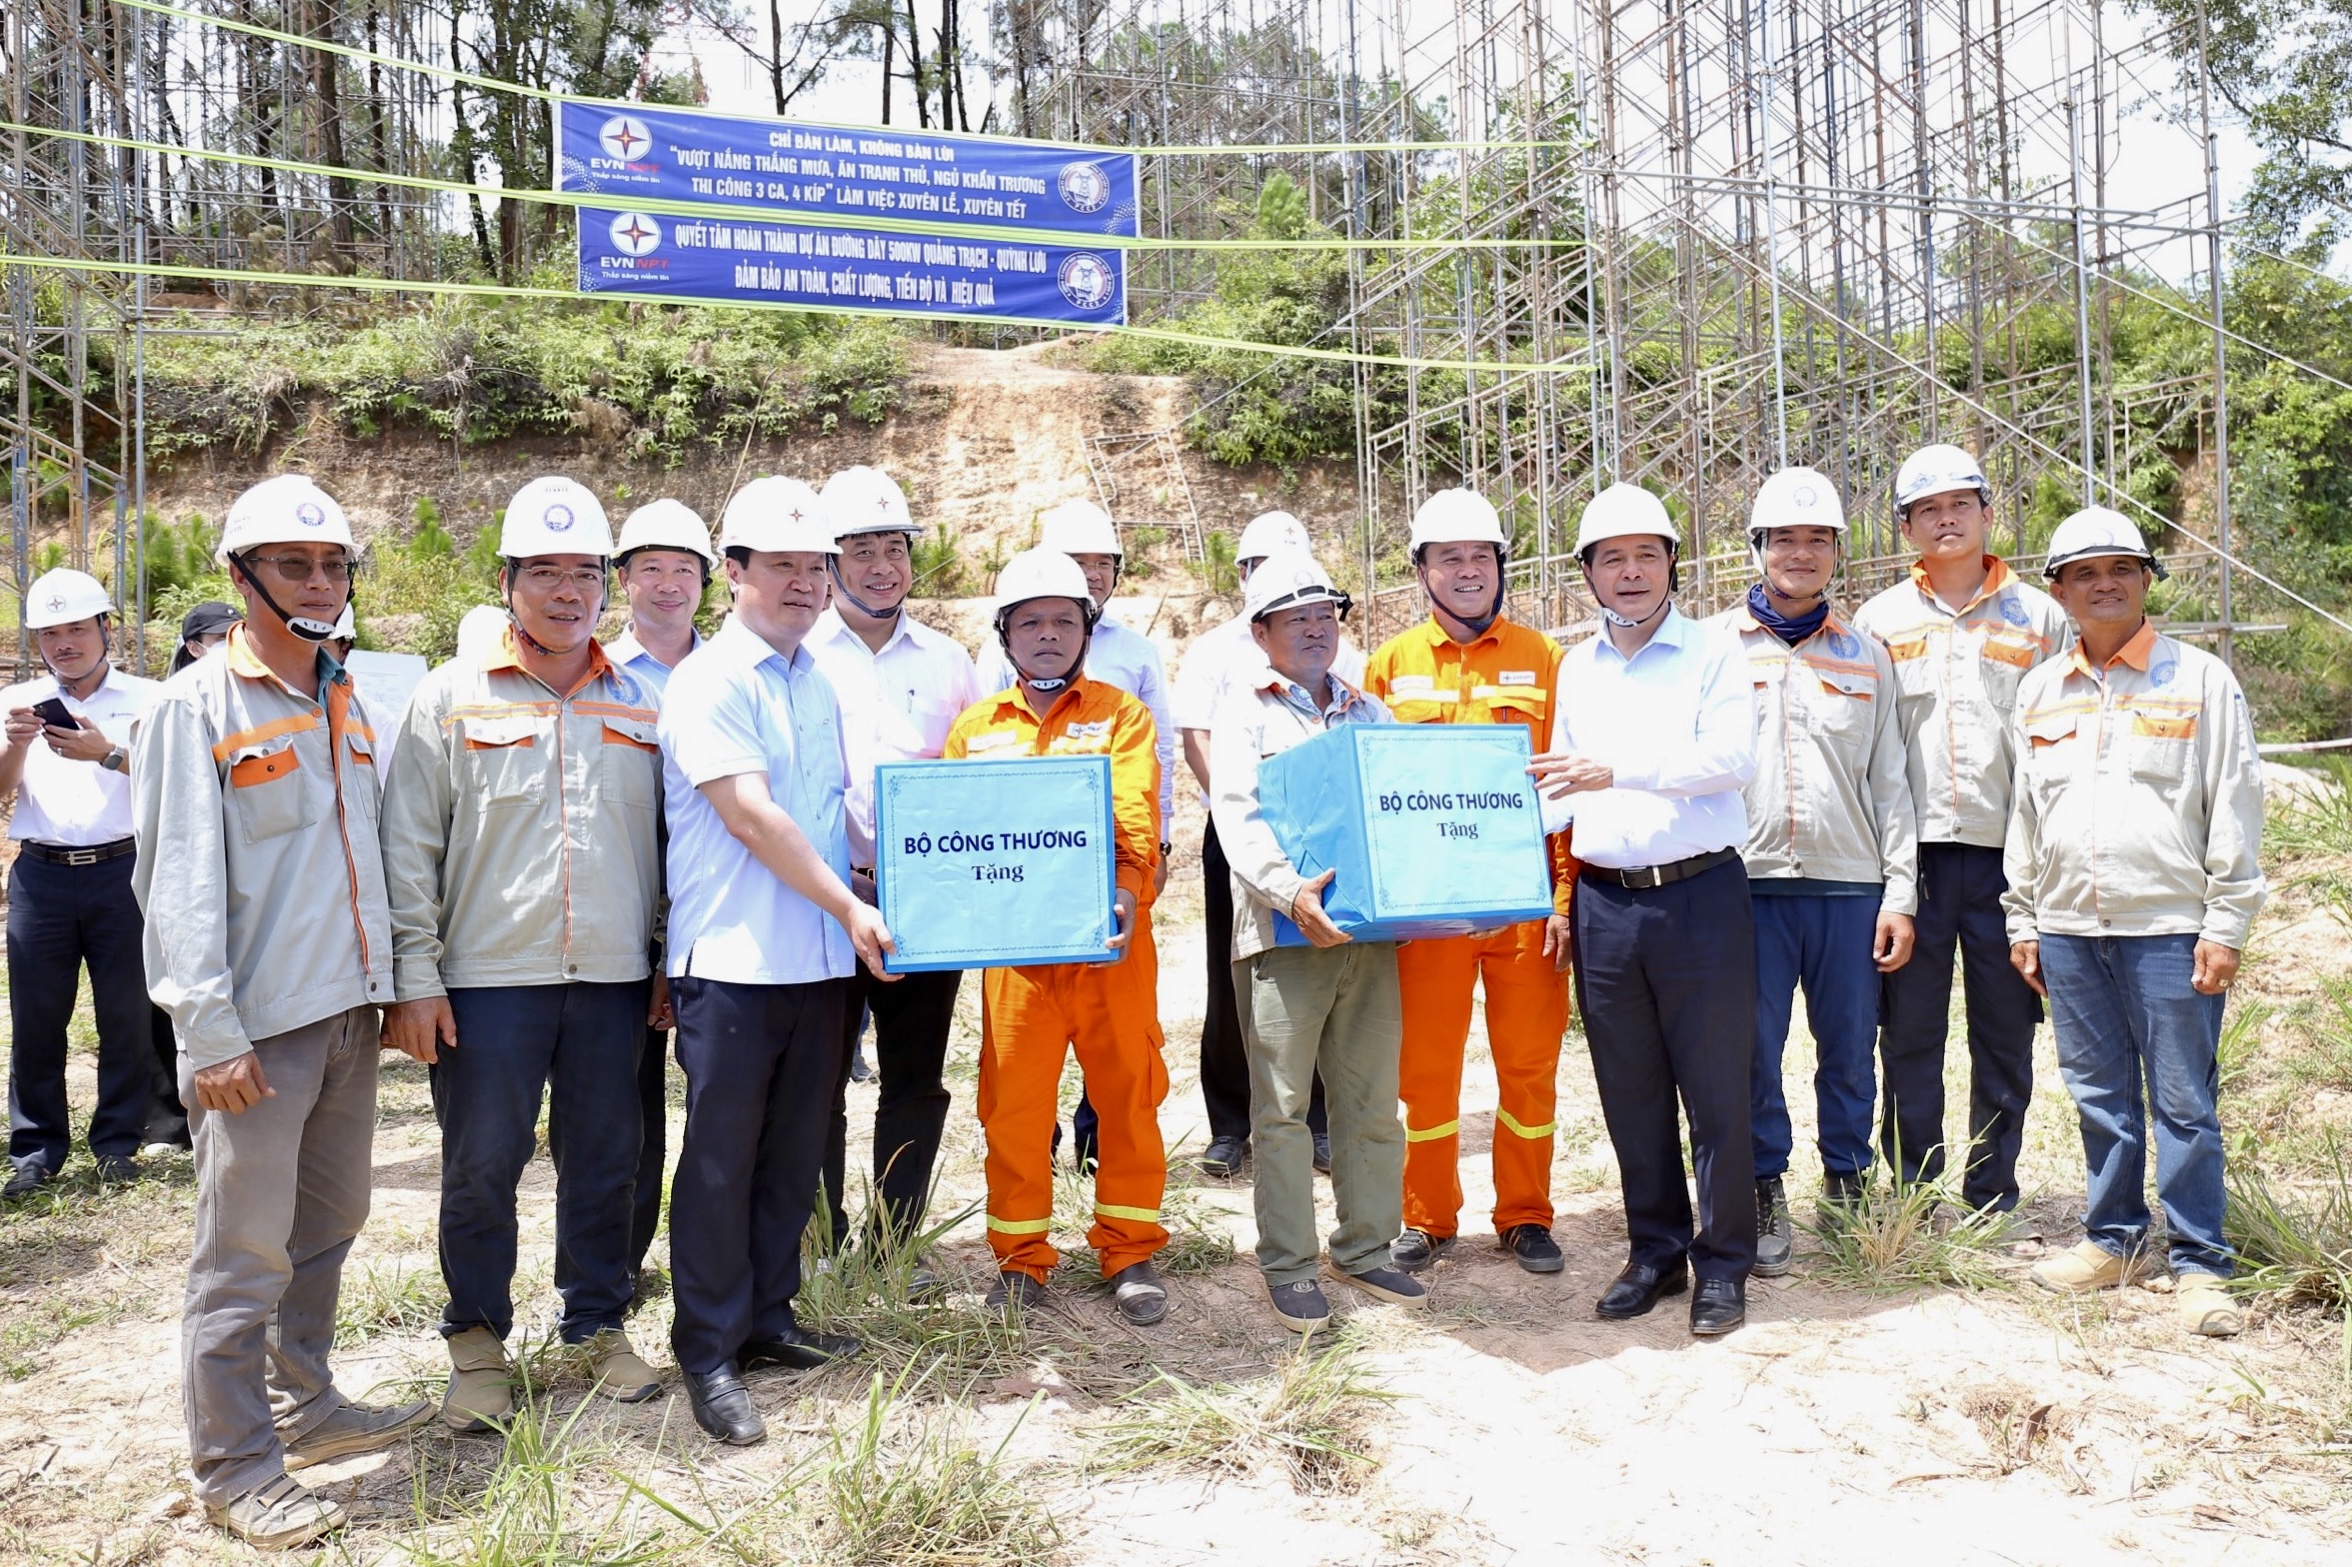 Bộ trưởng Nguyễn Hồng Diên thăm hỏi, động viên và tặng quà cho người lao động ngành Điện trên công trường khoảng néo 337 - 338 dự án đường dây 500kV Quảng Trạch - Quỳnh Lưu